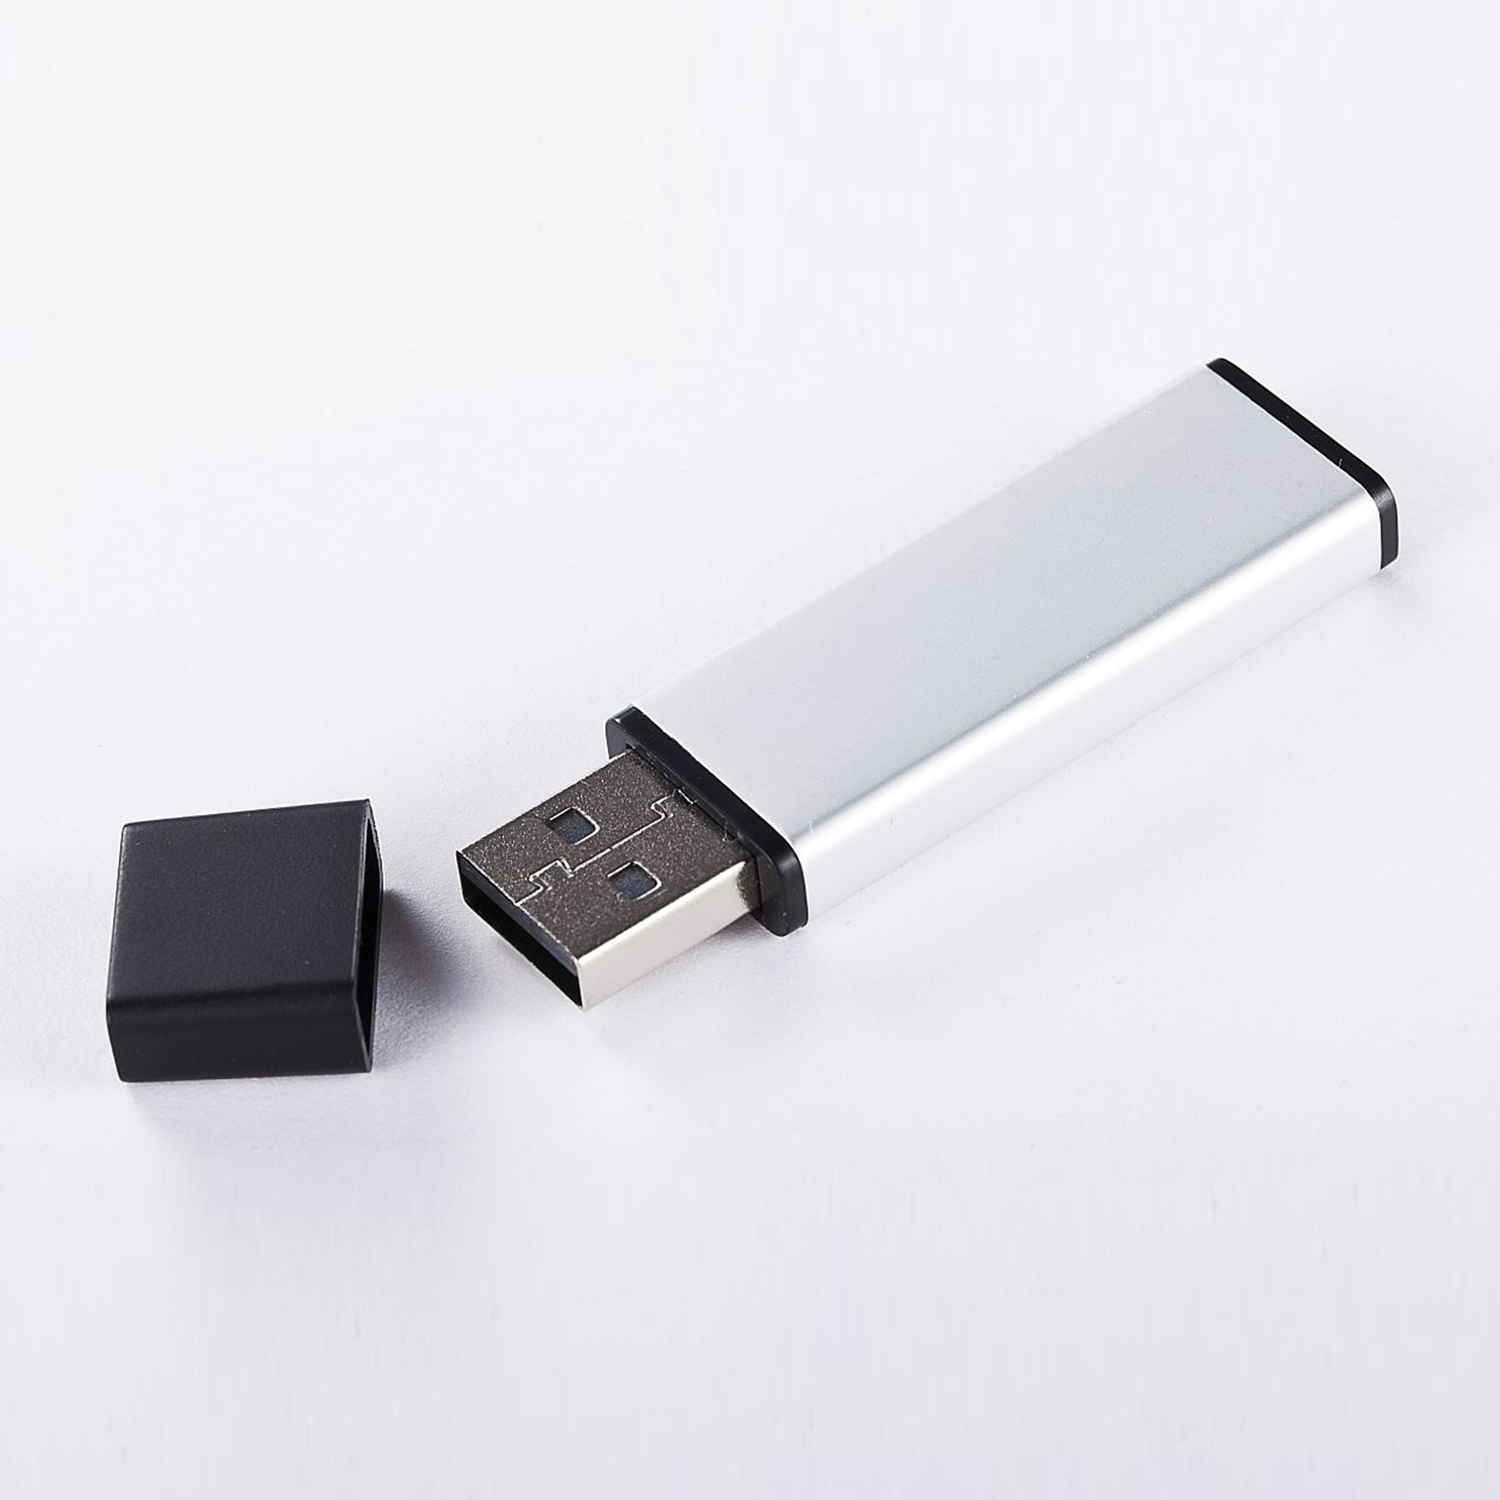 XLYNE USB 2.0 - GB GB) (ALUMINIUM, 2 USB 2 Stick